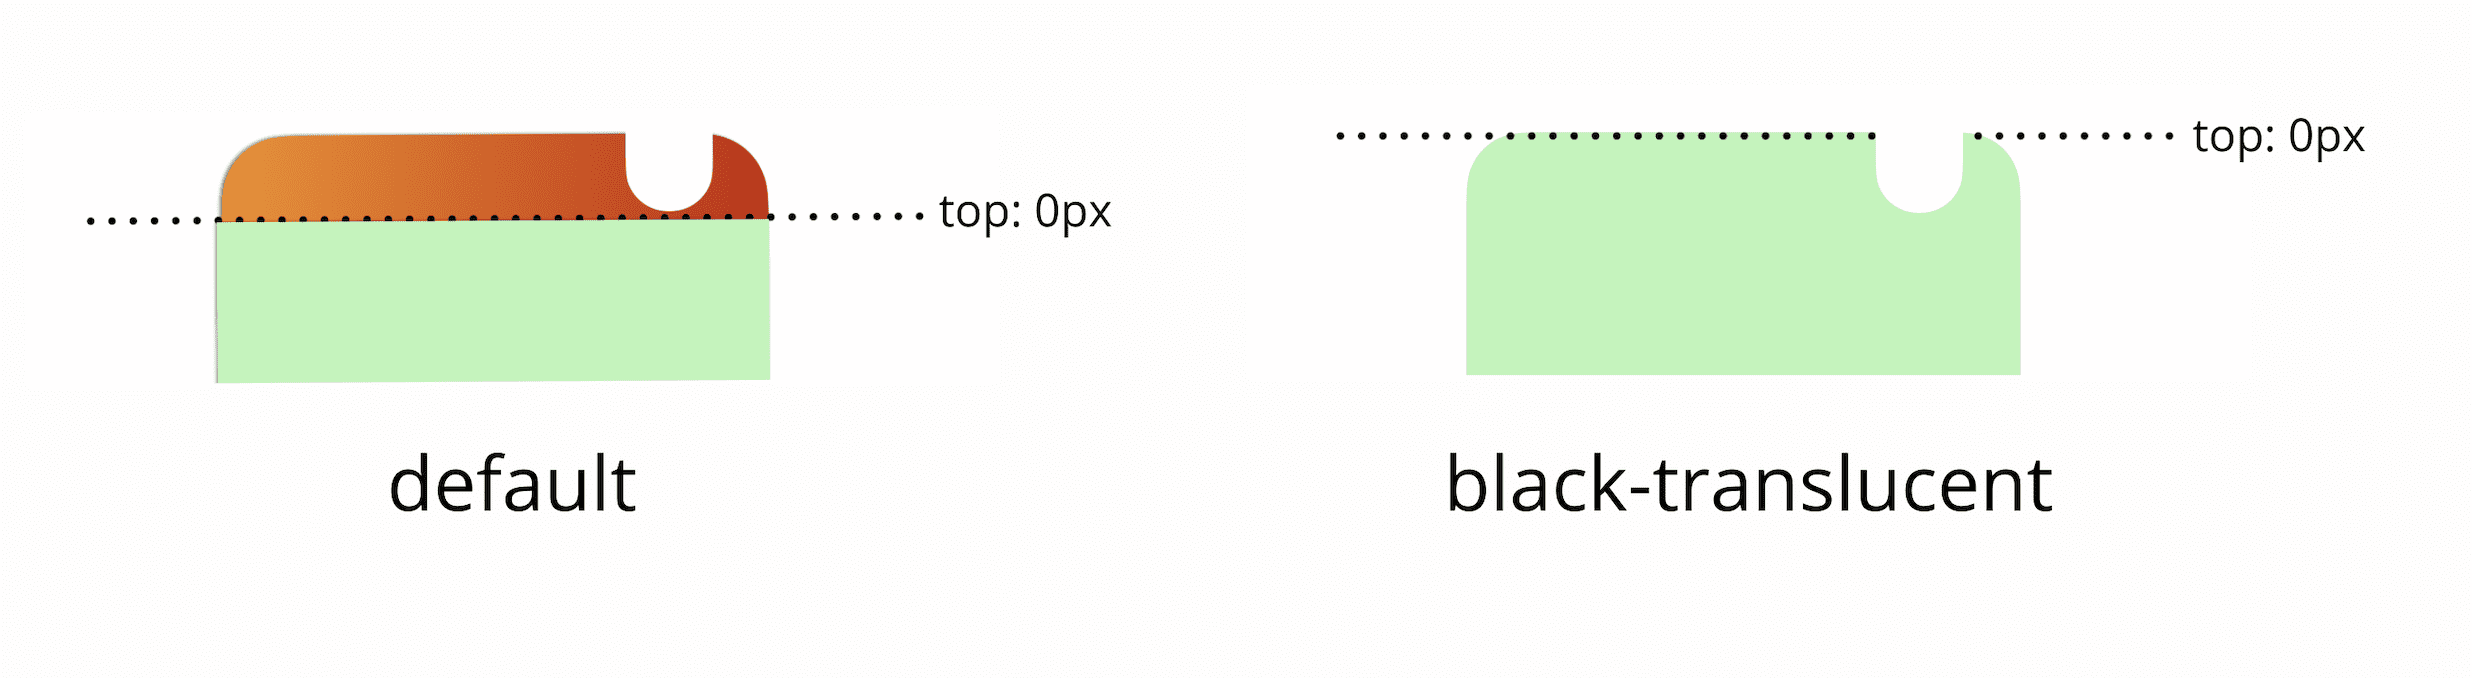 デフォルトでは、ビューポートの上部 0 ピクセルはステータスバーの下にあります。黒色半透明のメタタグを追加すると、ビューポートの上部 0 ピクセルが画面の物理的な上端と同じになります。